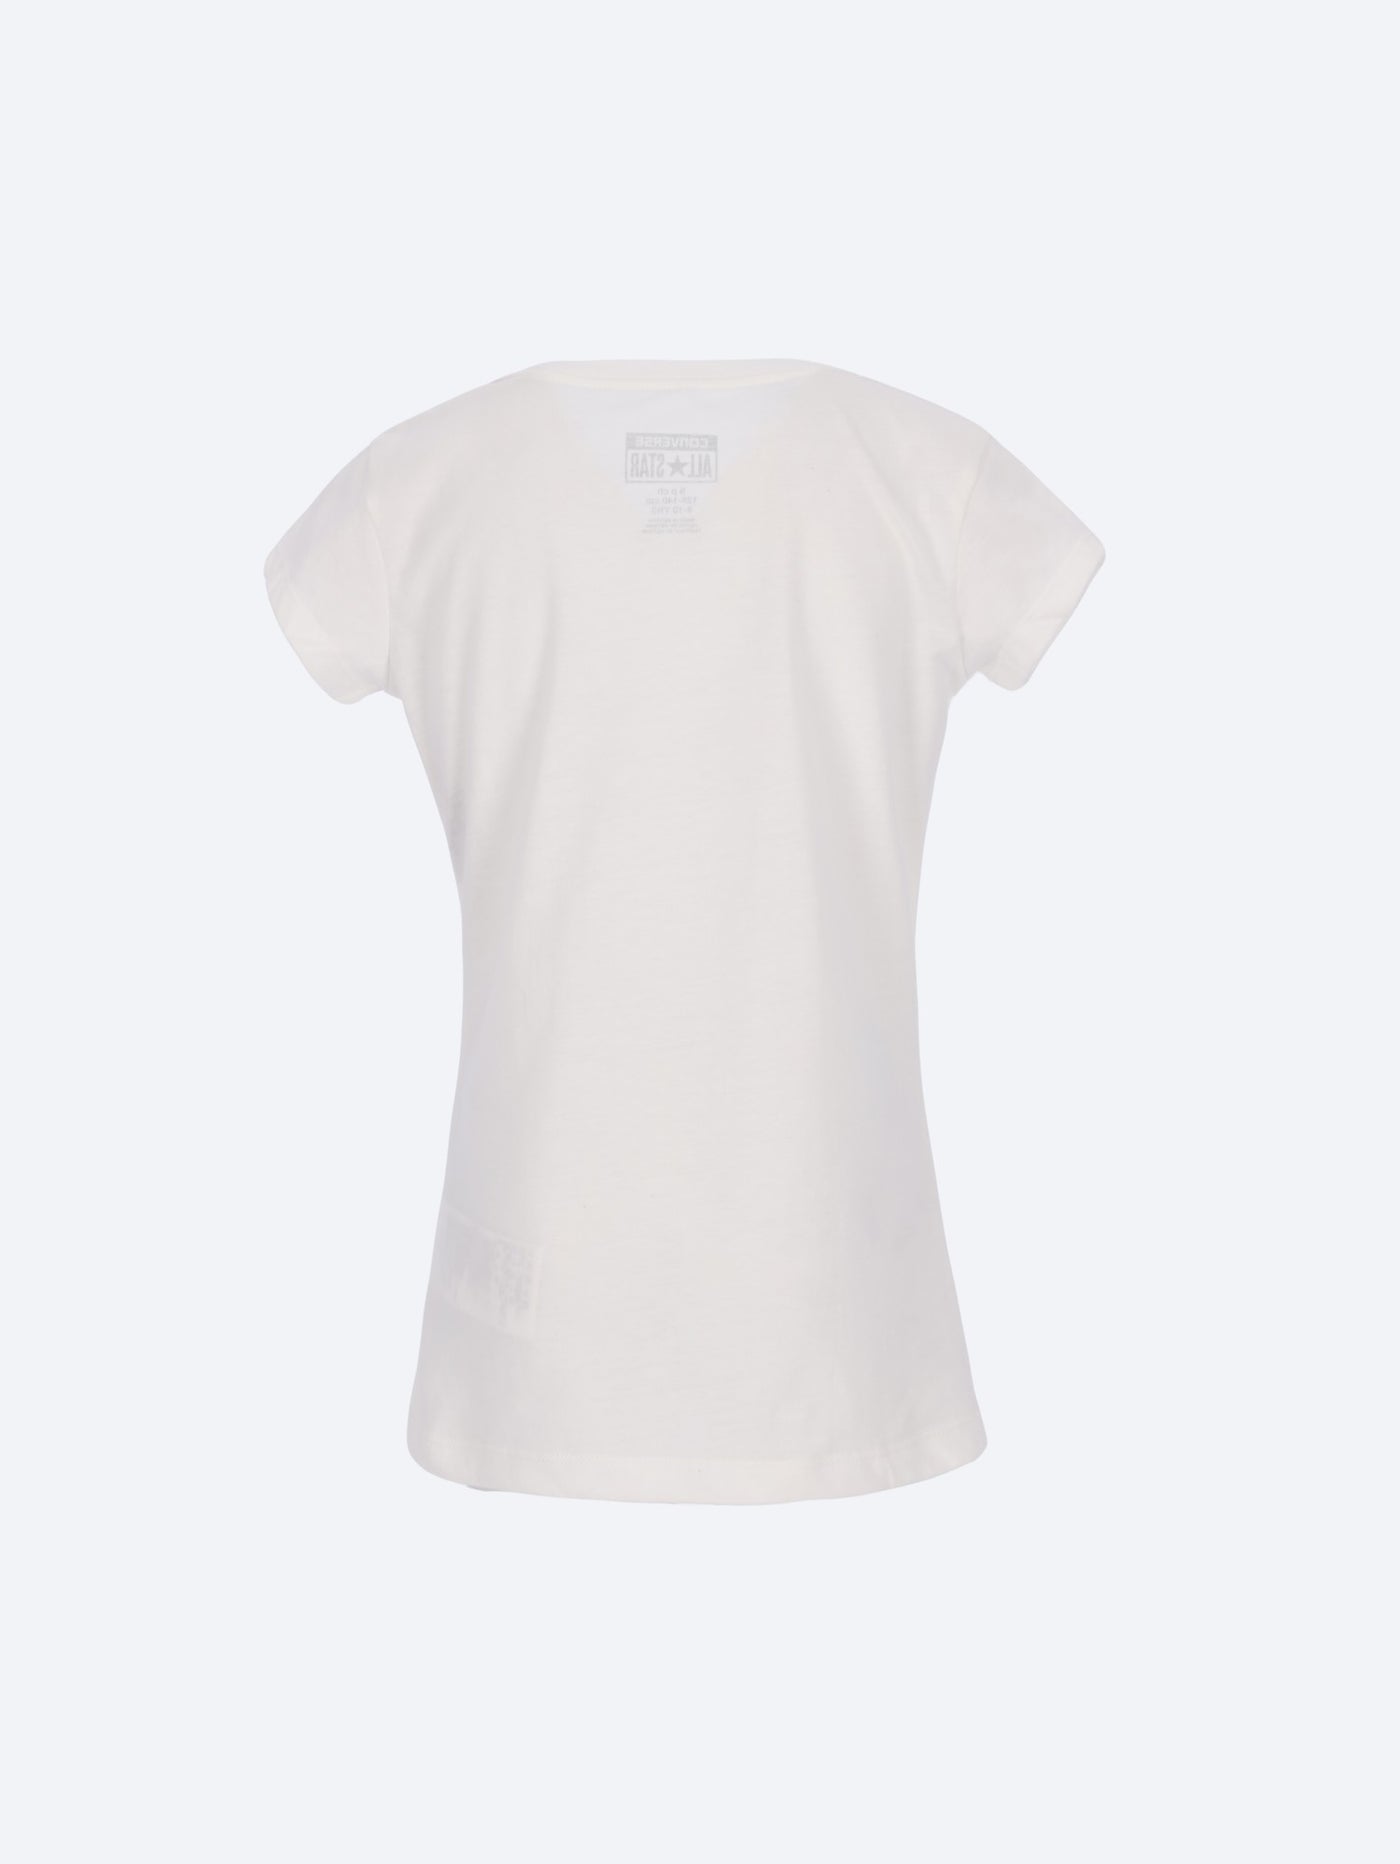 Converse Kids Girl's T-Shirt Ombre Chuck Patch Tee - 466732